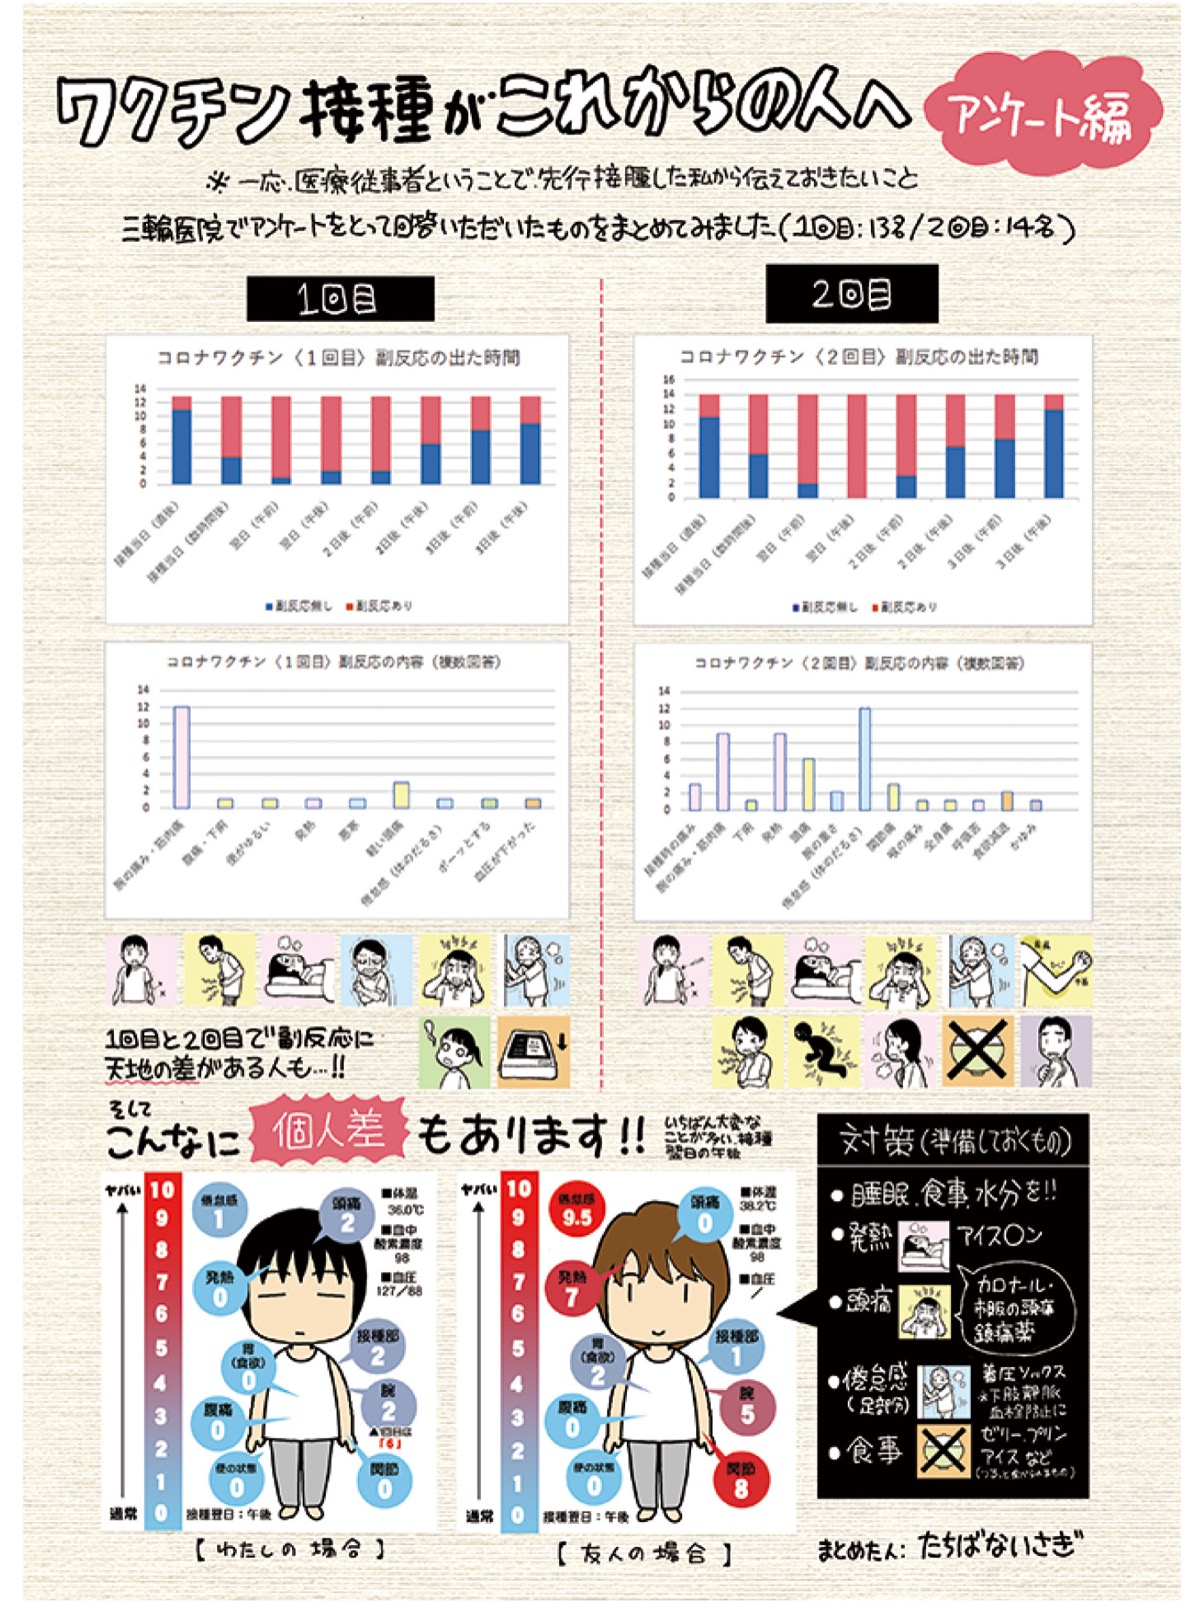 横須賀市在住 漫画家が体験レポート ワクチン接種の 事前準備 イラストがネット上で話題 横須賀 タウンニュース